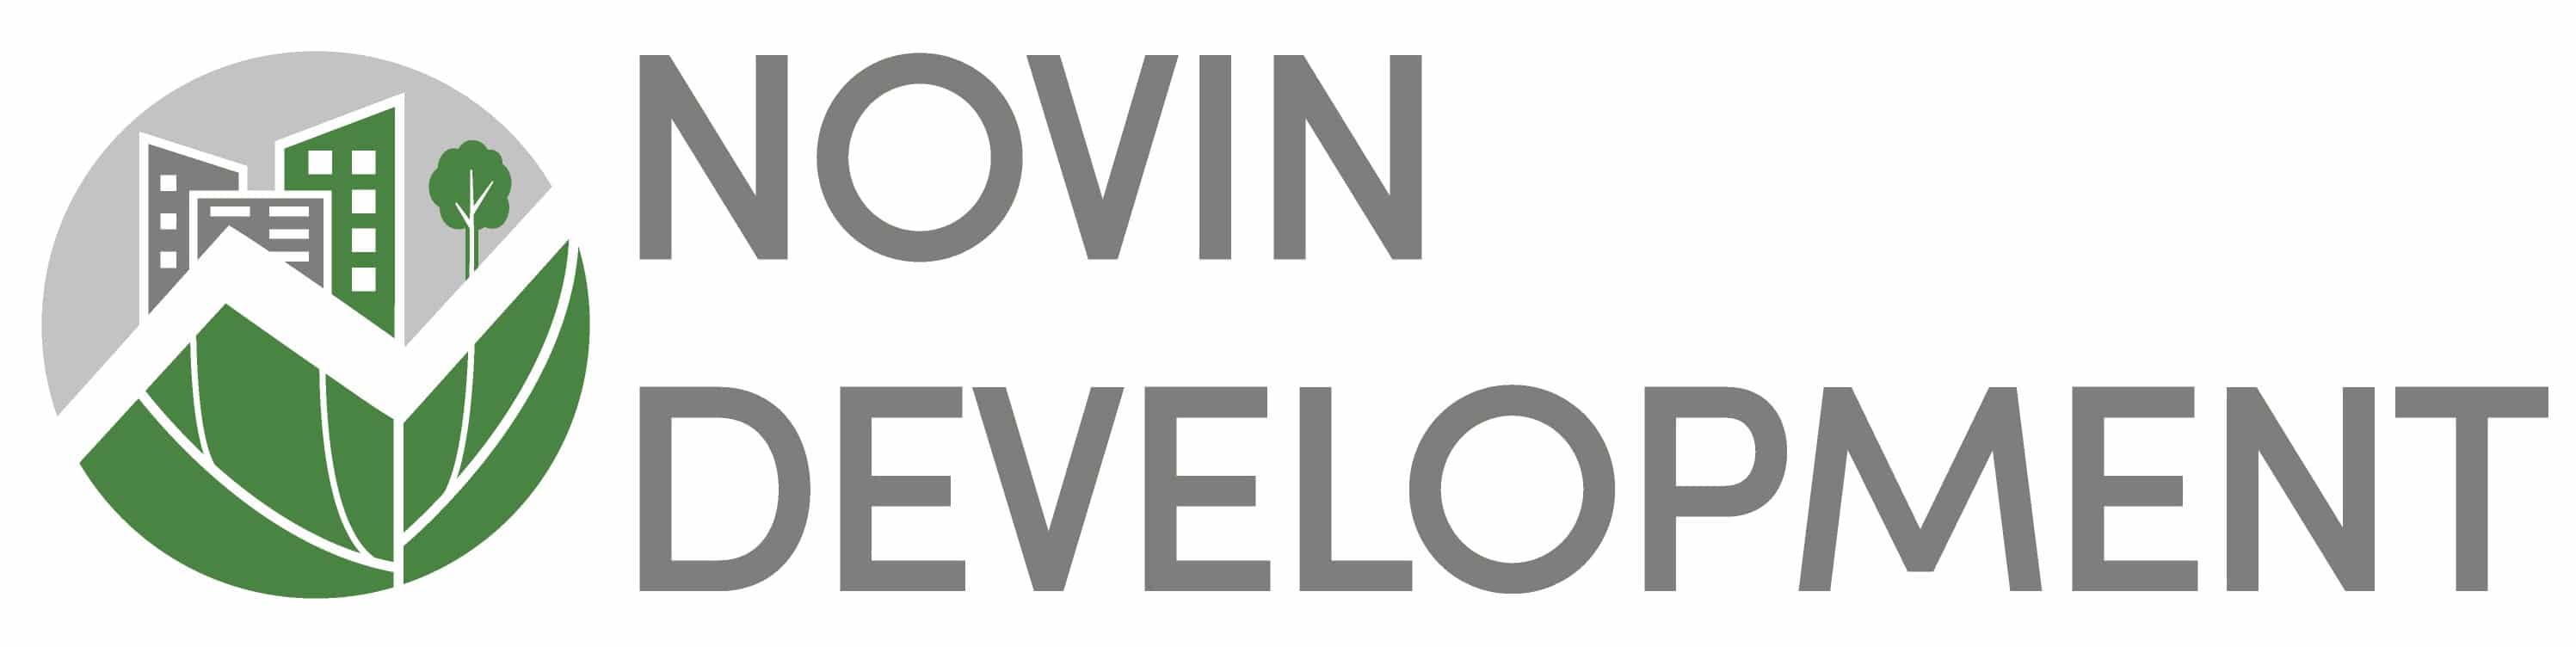 Novin Development